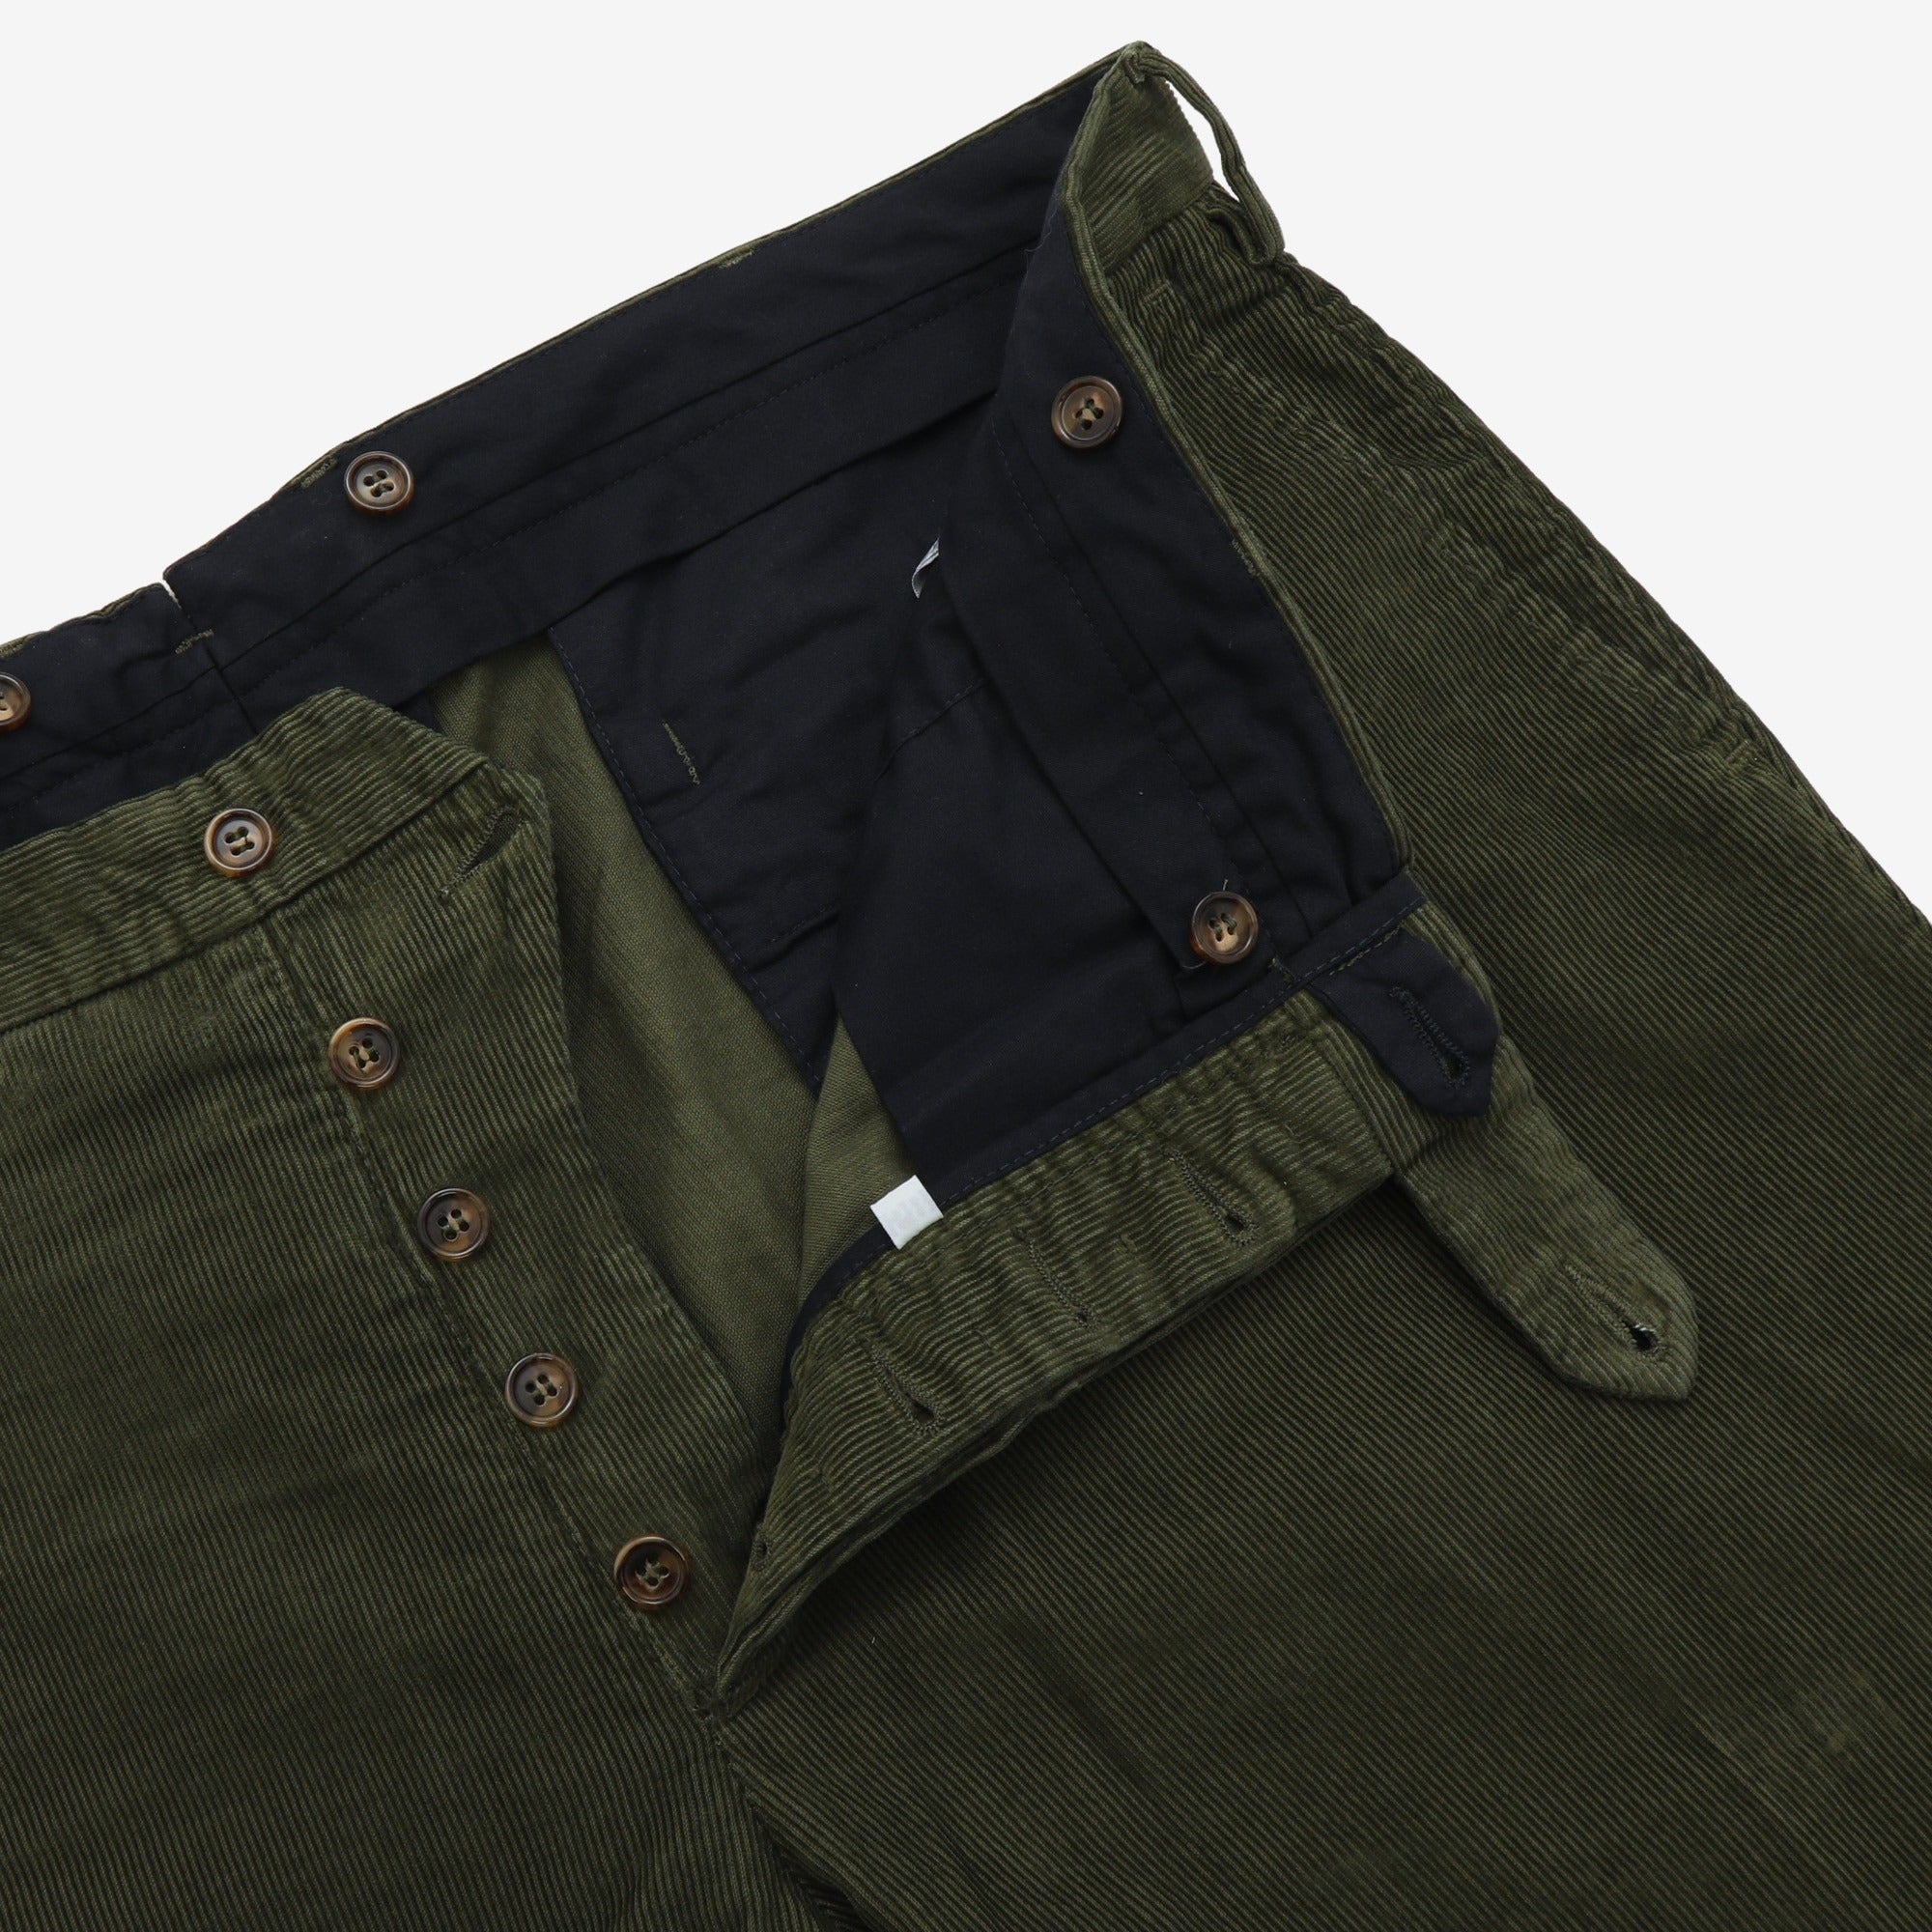 Corduroy Trousers (42W x 32.5L)